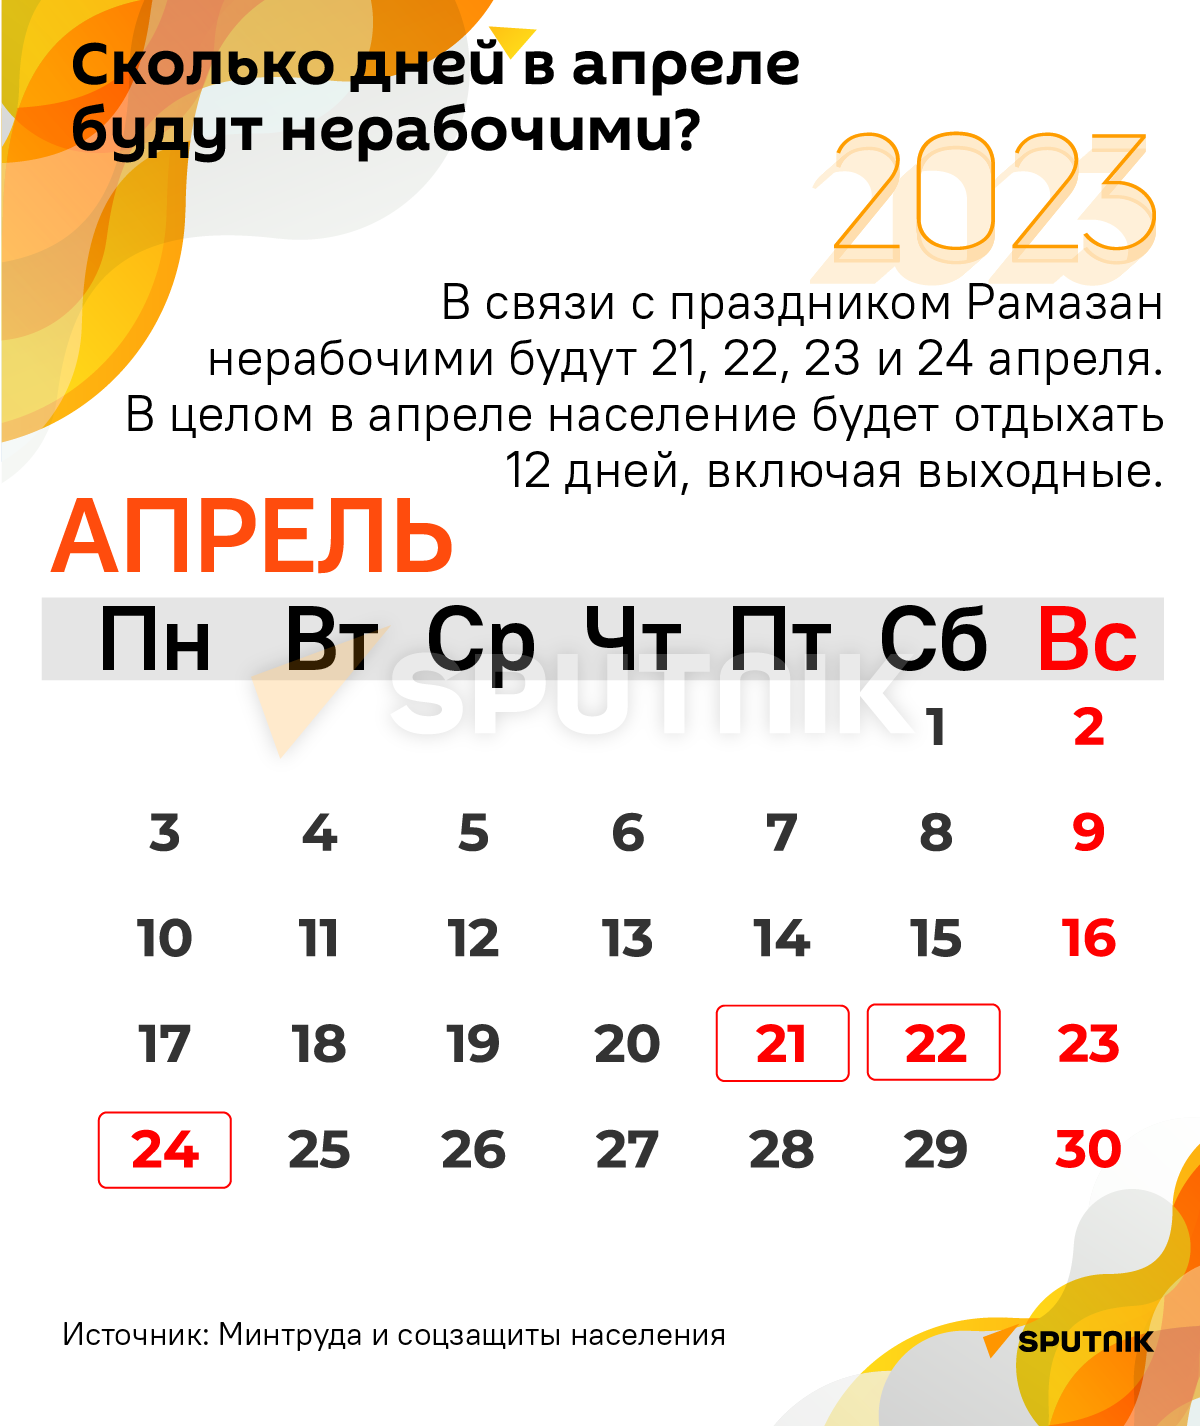 Инфографика: Сколько дней в апреле будут нерабочими? - Sputnik Азербайджан